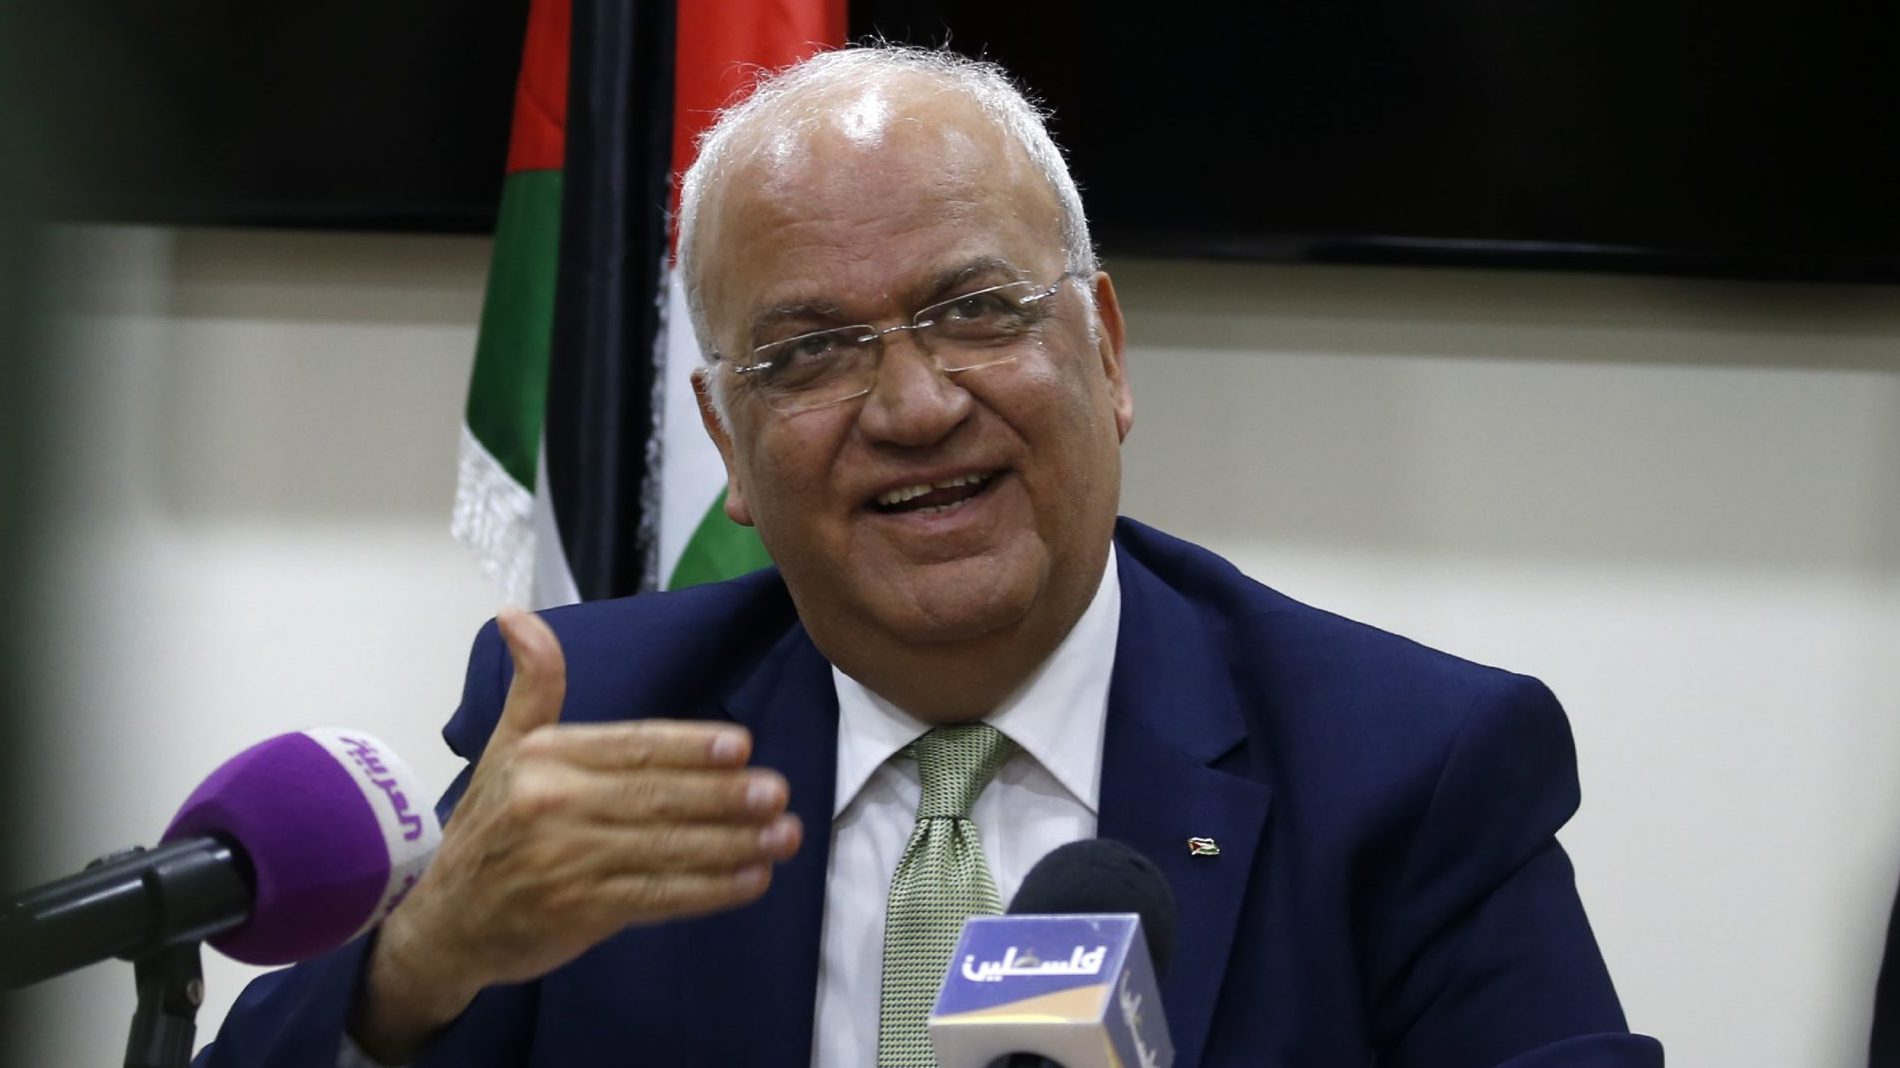 Senior Palestinian Official Saeb Erekat Dies of COVID-19